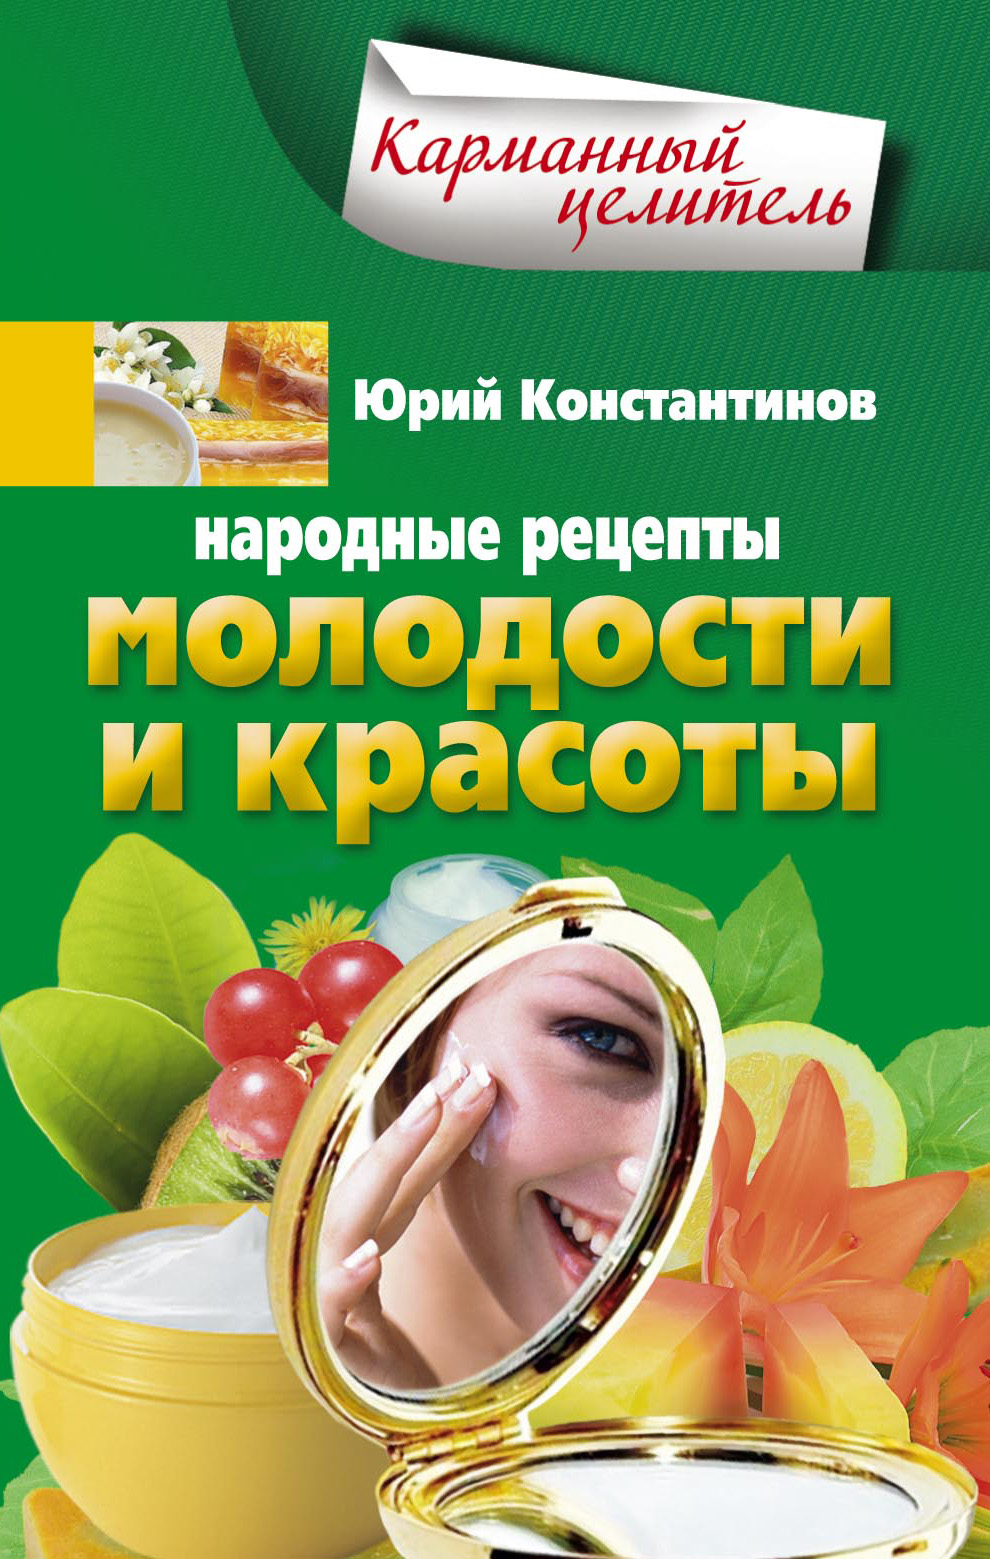 Юрий Константинов - «Народные рецепты молодости и красоты»